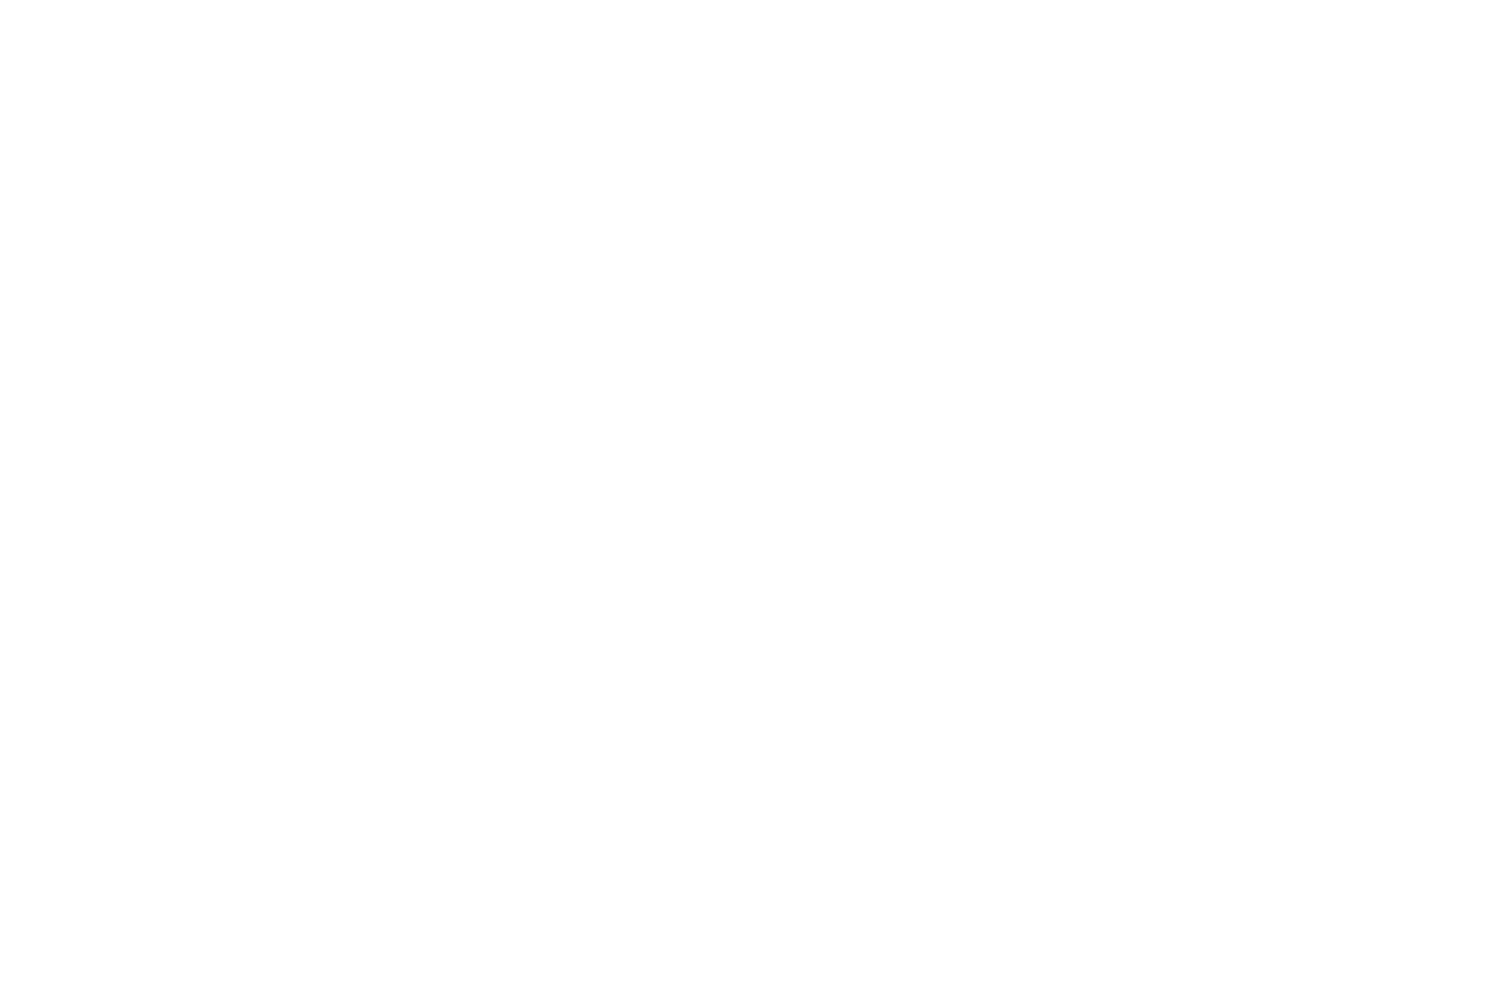 BAMBOO HOUSE | Sapanca Bamboolow Resort - Sapanca Gölü Kenarında Konaklama